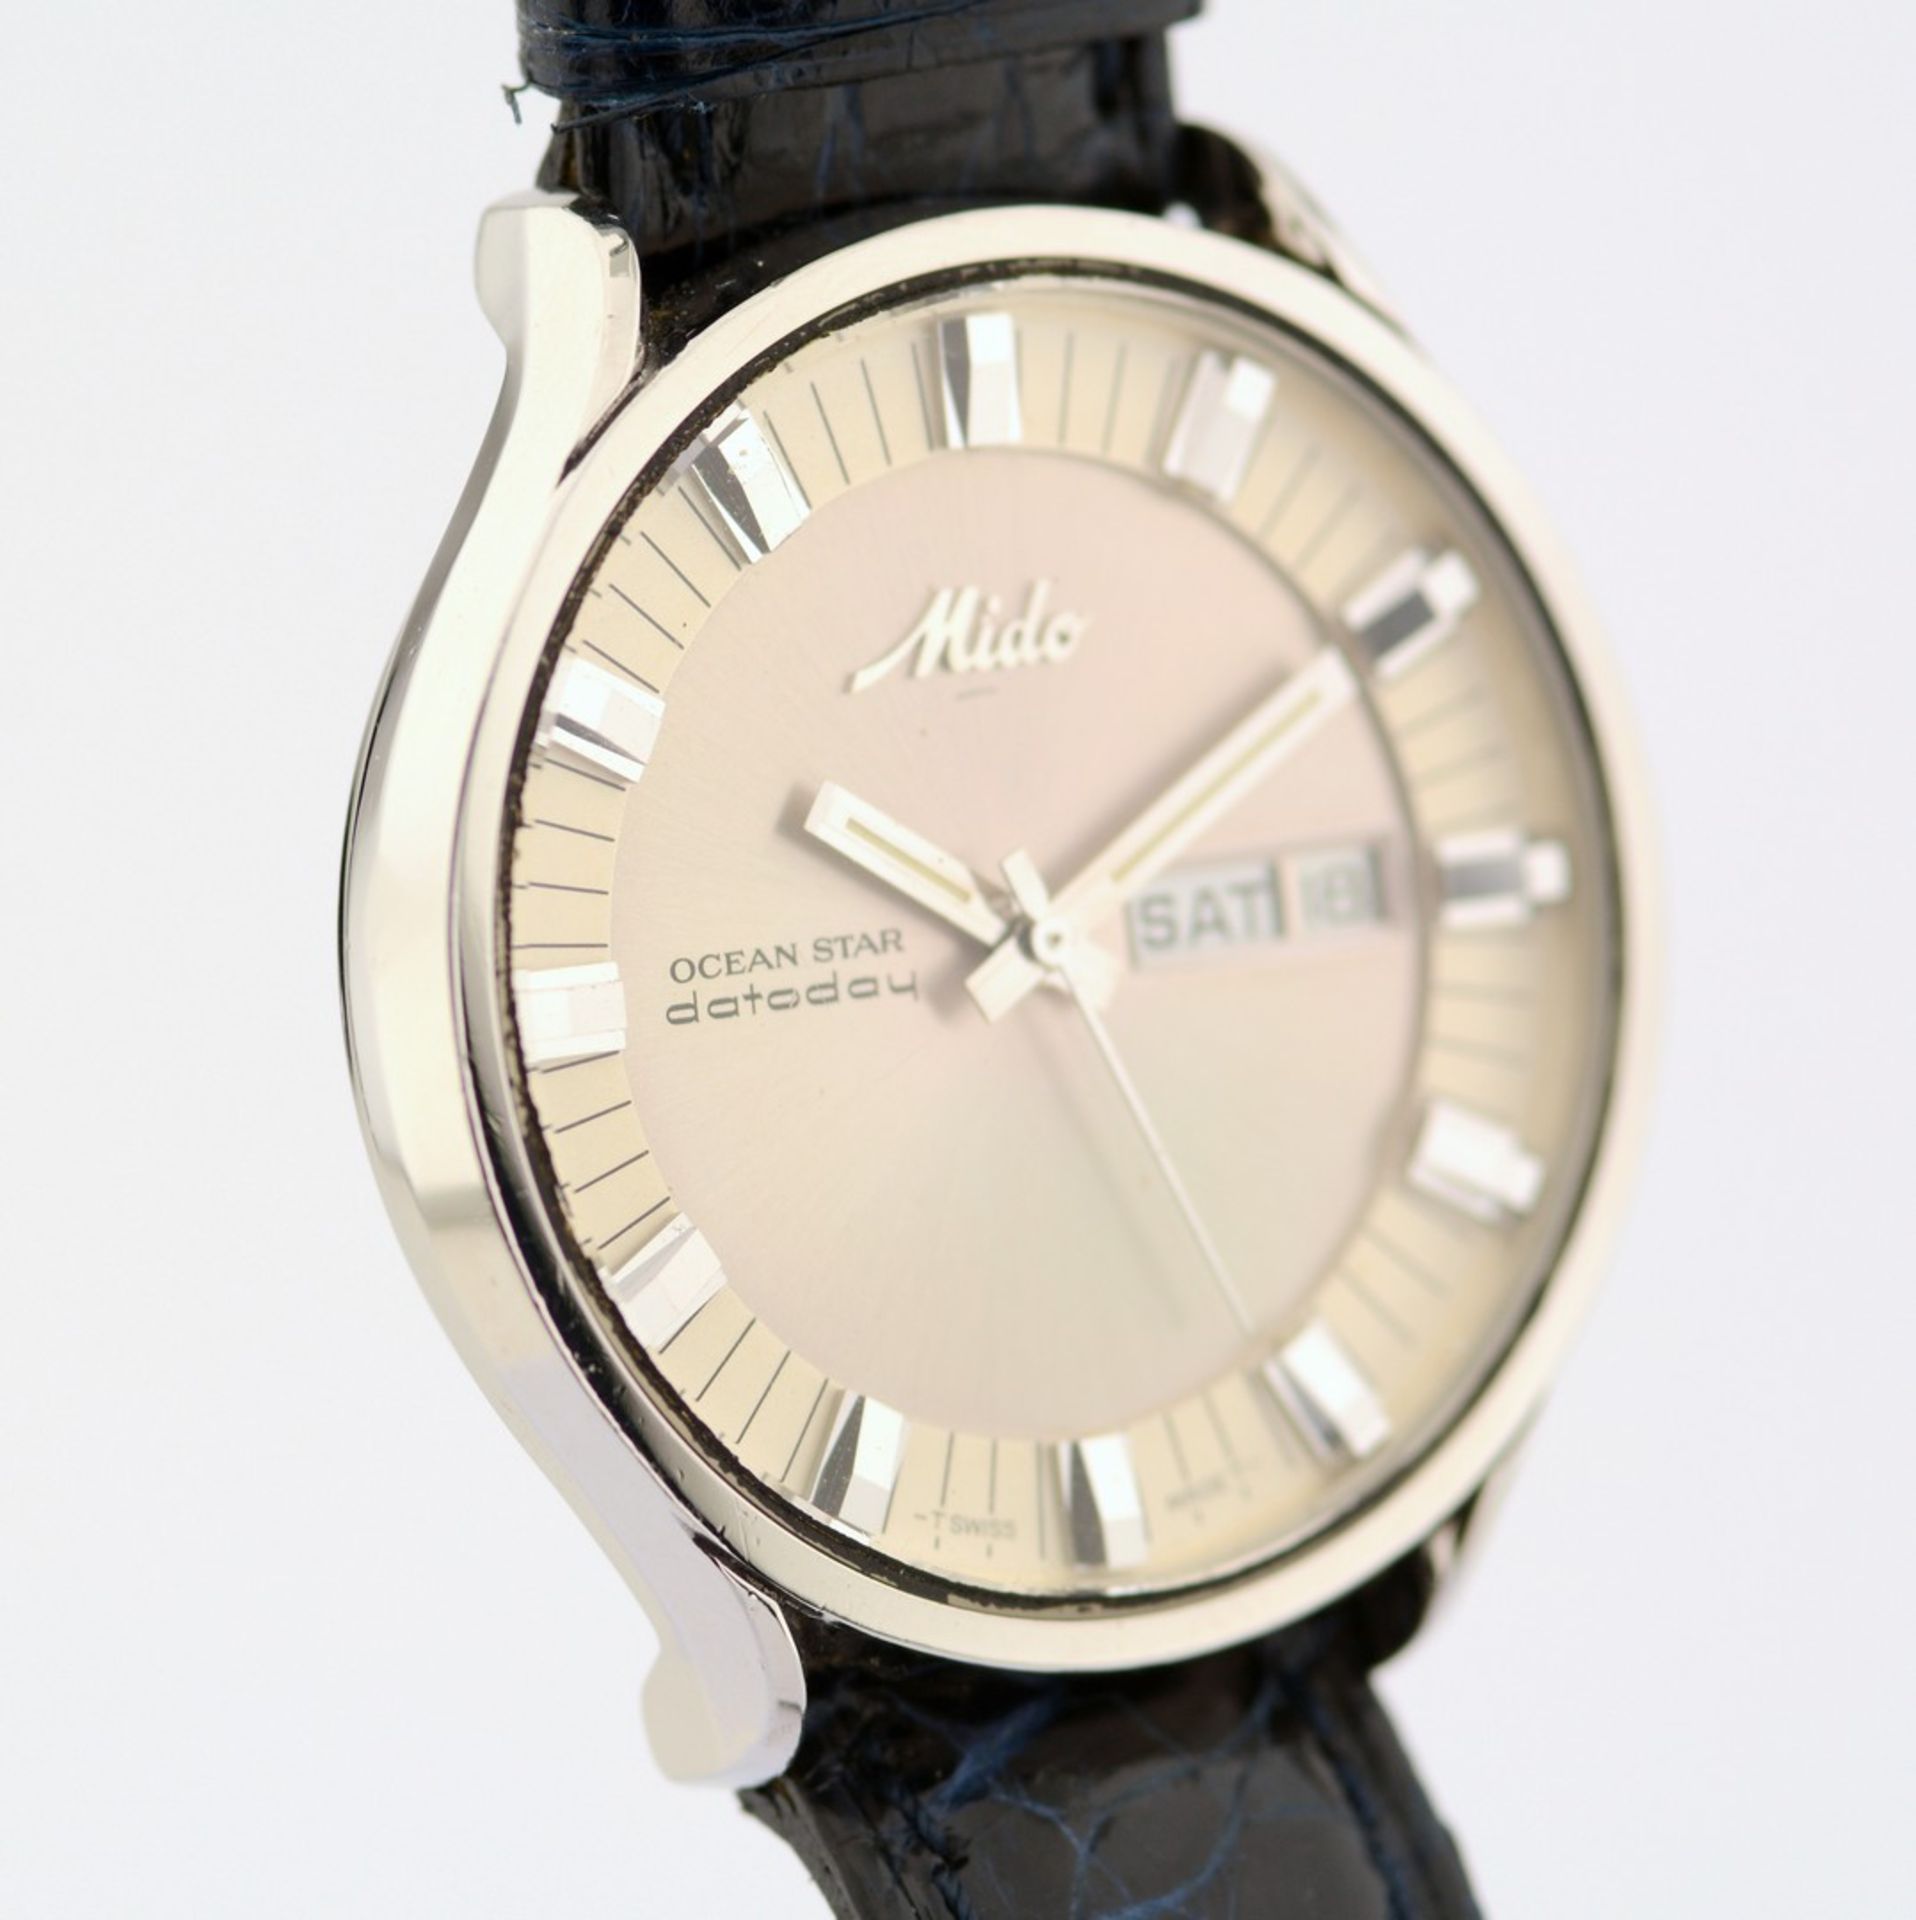 Mido / Ocean Star - Datoday - Day/Date - Gentlemen's Steel Wristwatch - Image 5 of 7